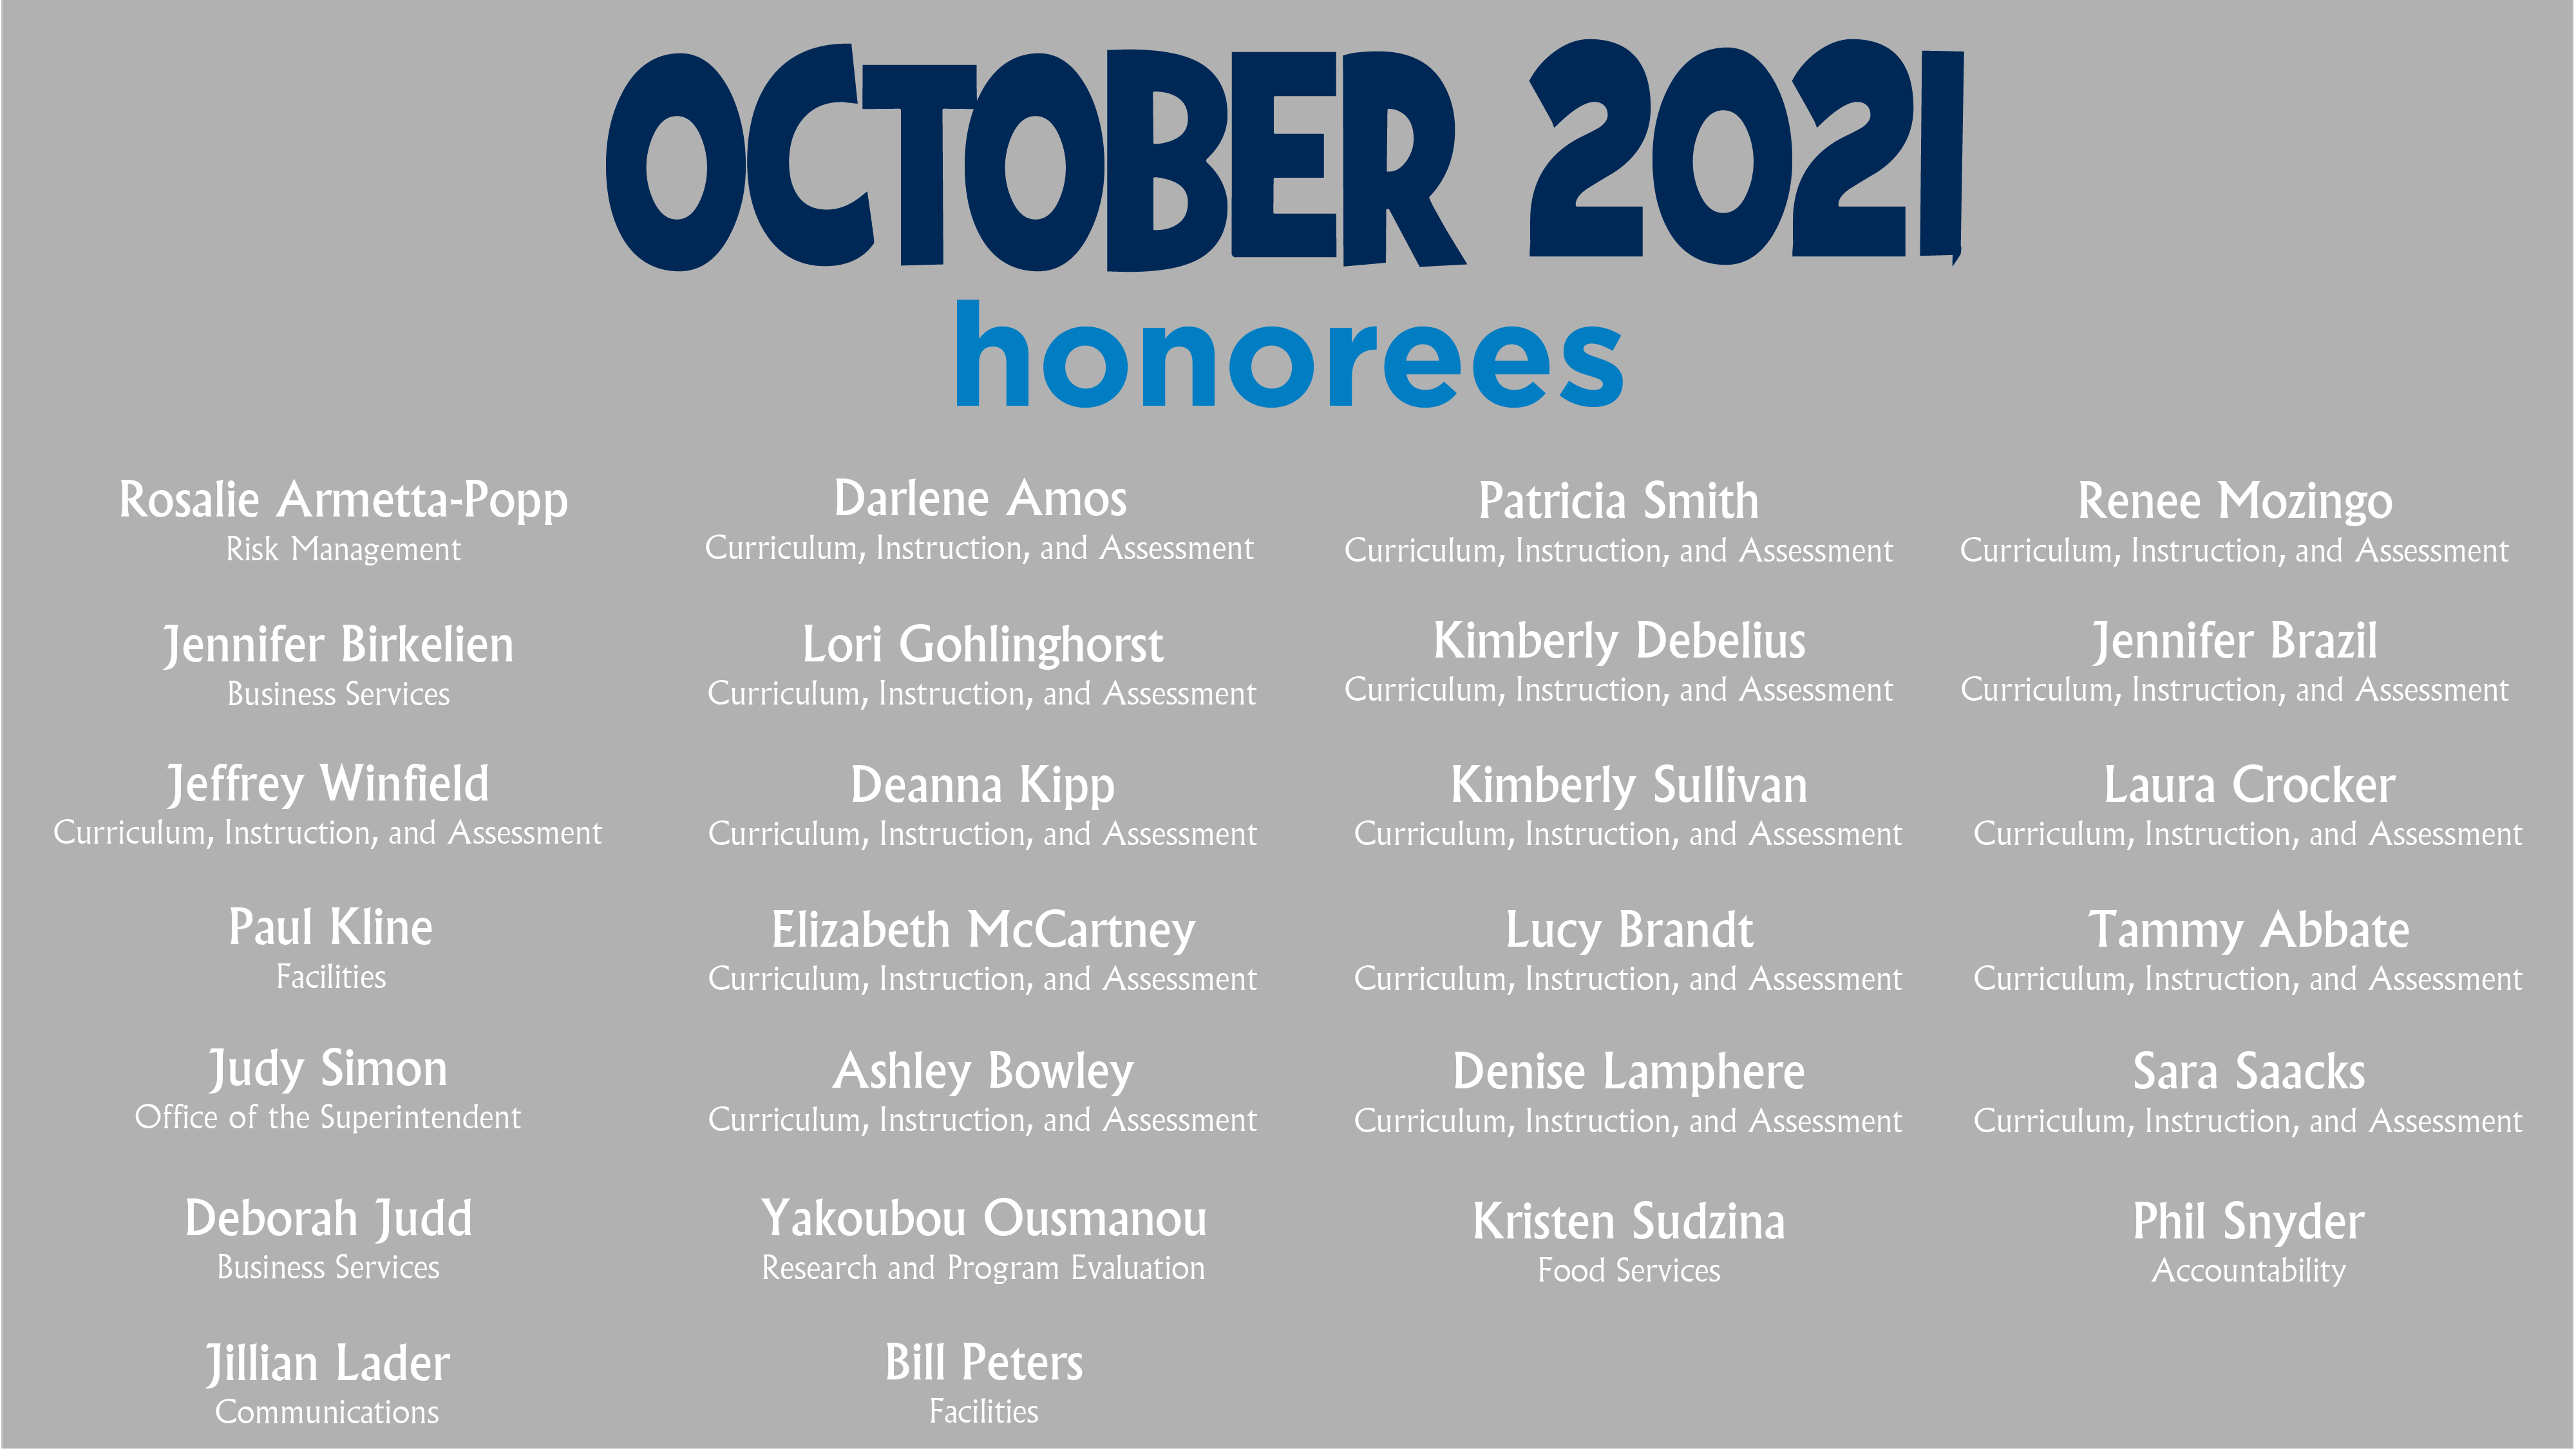 HCPS Bowtie Breakfast Honorees - September 2021